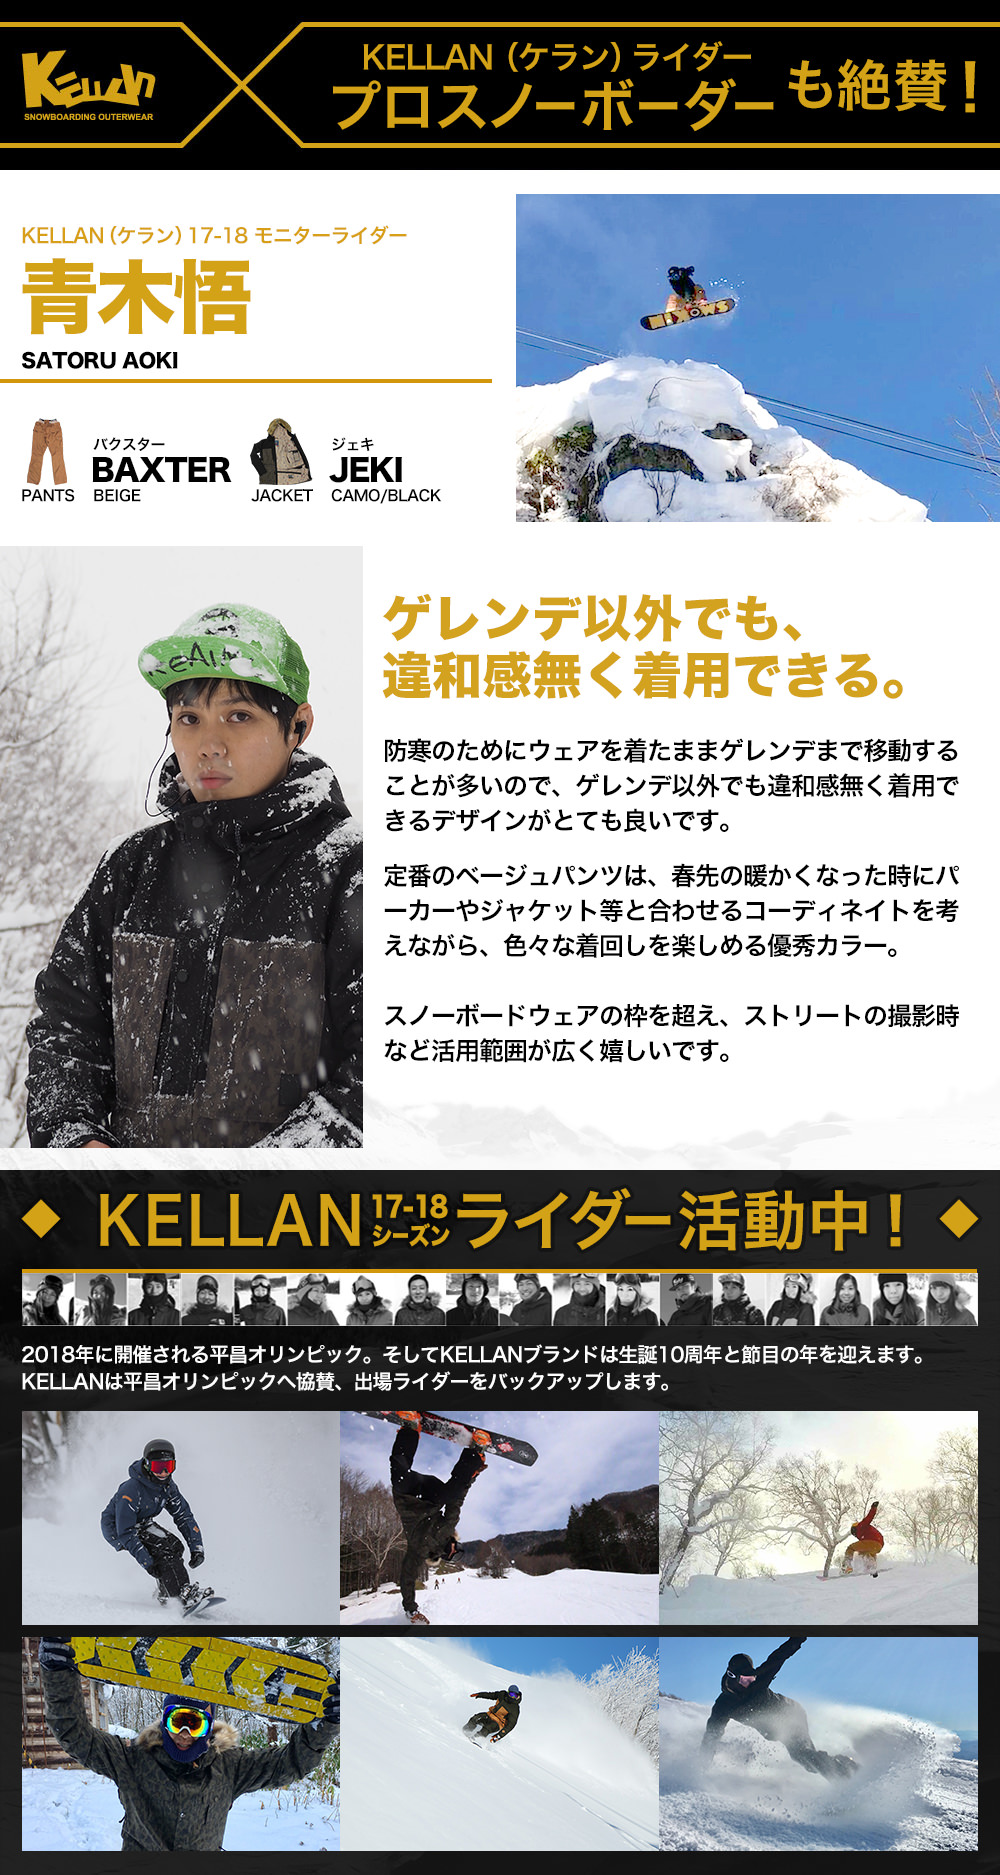 ベストスポーツ スノボ ウェア メンズ ケラン バクスターパンツ スノーボードウェア スキーウェア 大きいサイズ 耐水圧 KELLAN BAXTER PNT 10201 スキー スノボー 送料無料 2017-18